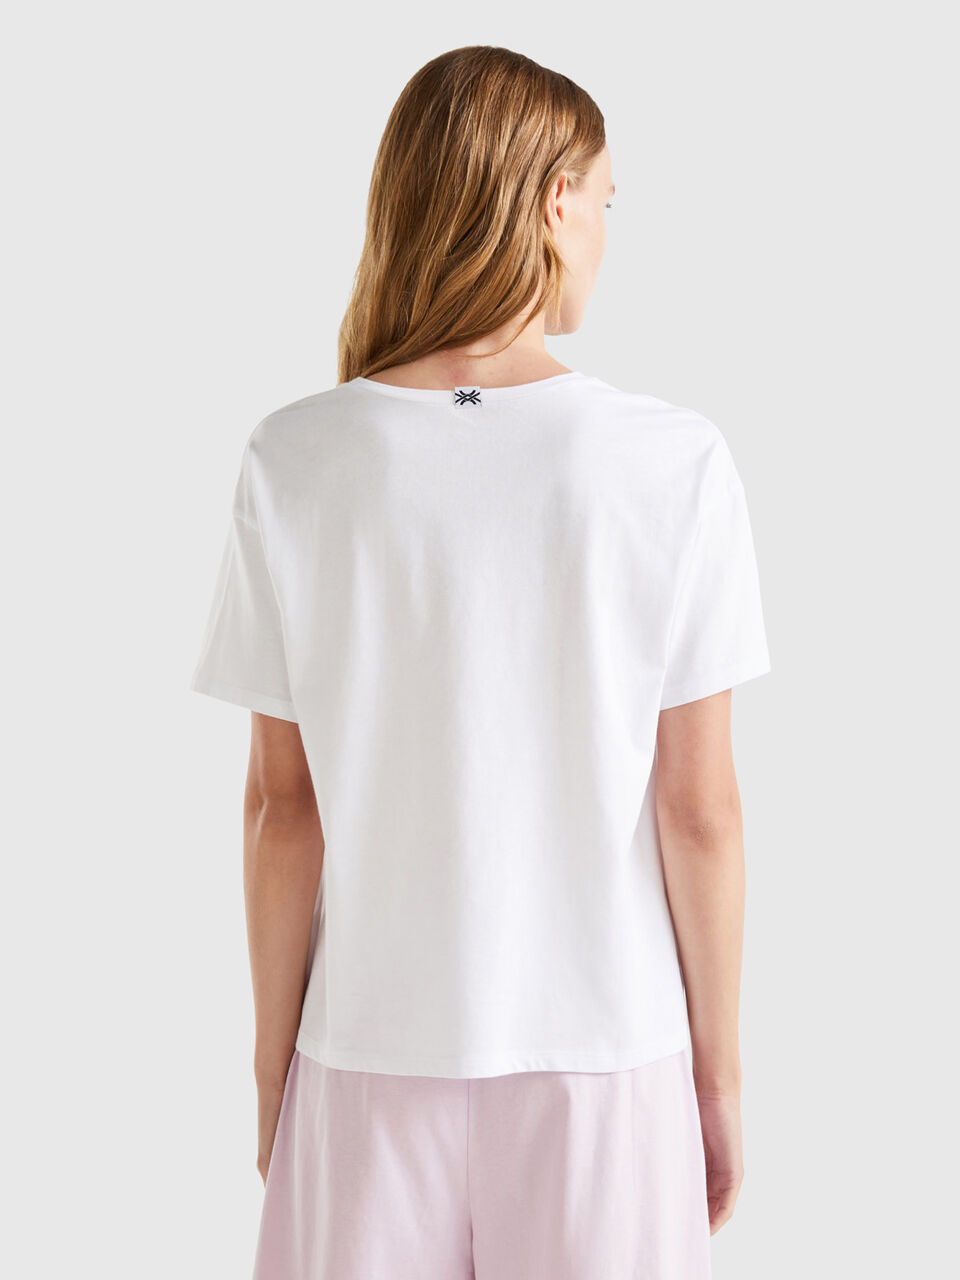 - | t-shirt White 100% cotton Benetton